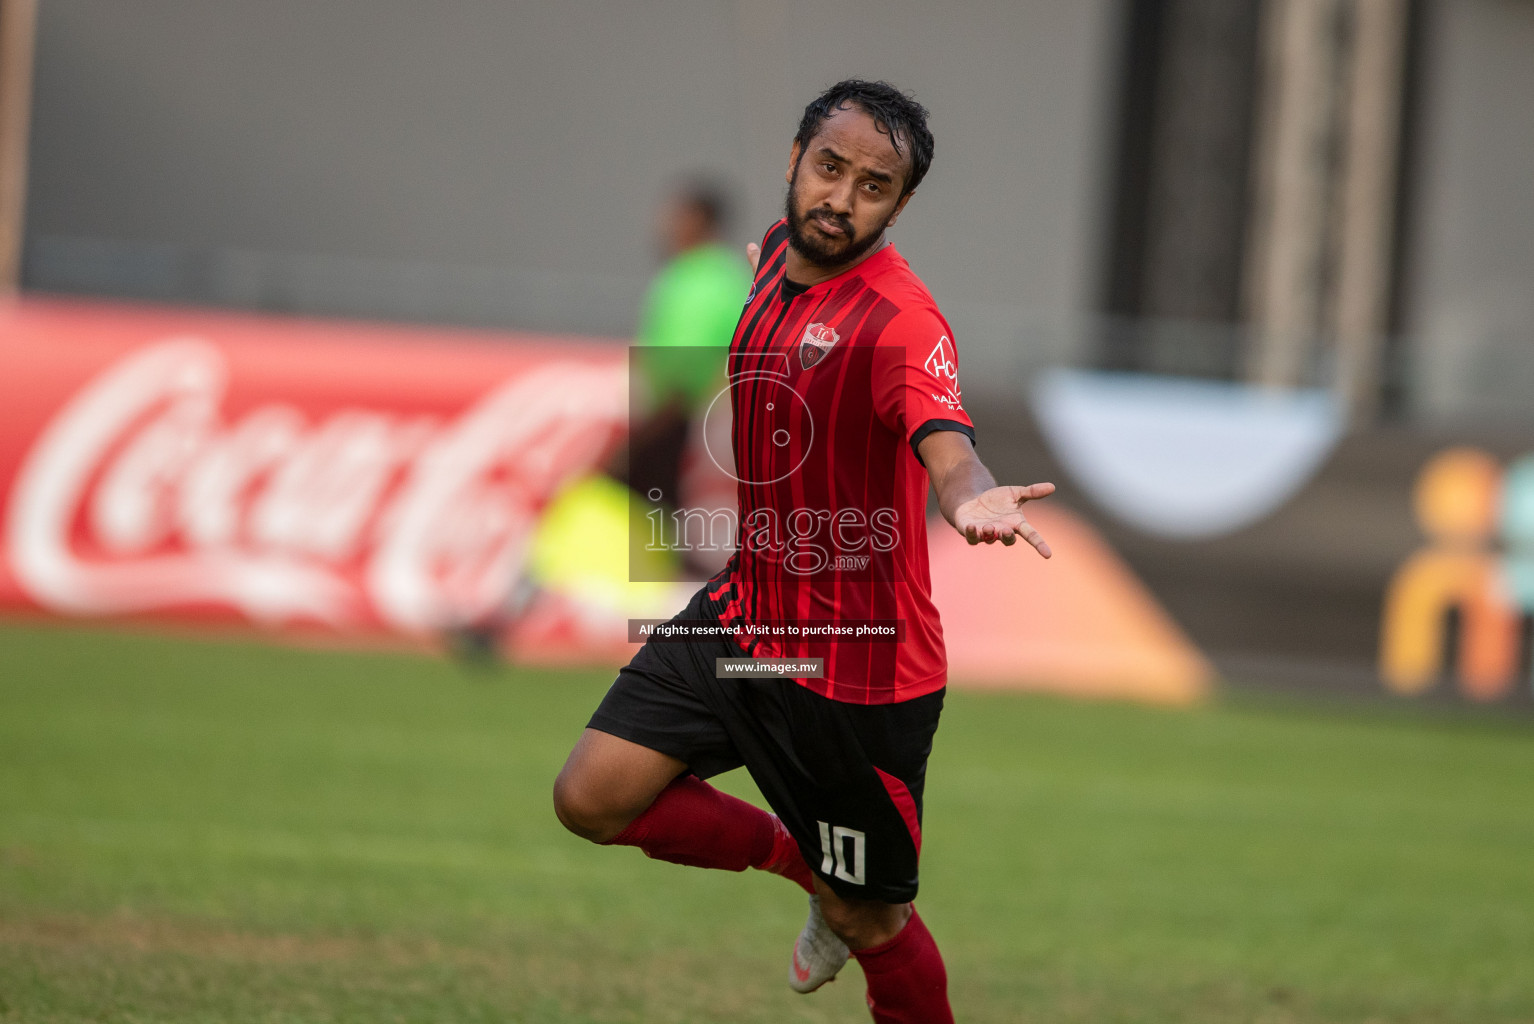 Dhiraagu Dhivehi Premier League 2019 - TC Sports Club vs United Victory TC Sports Club vs United Victory in Dhiraagu Dhivehi Premier League 2019 held in Male', Maldives on 25th June 2019 Photos: Shuadh Abdul Sattar/images.mv